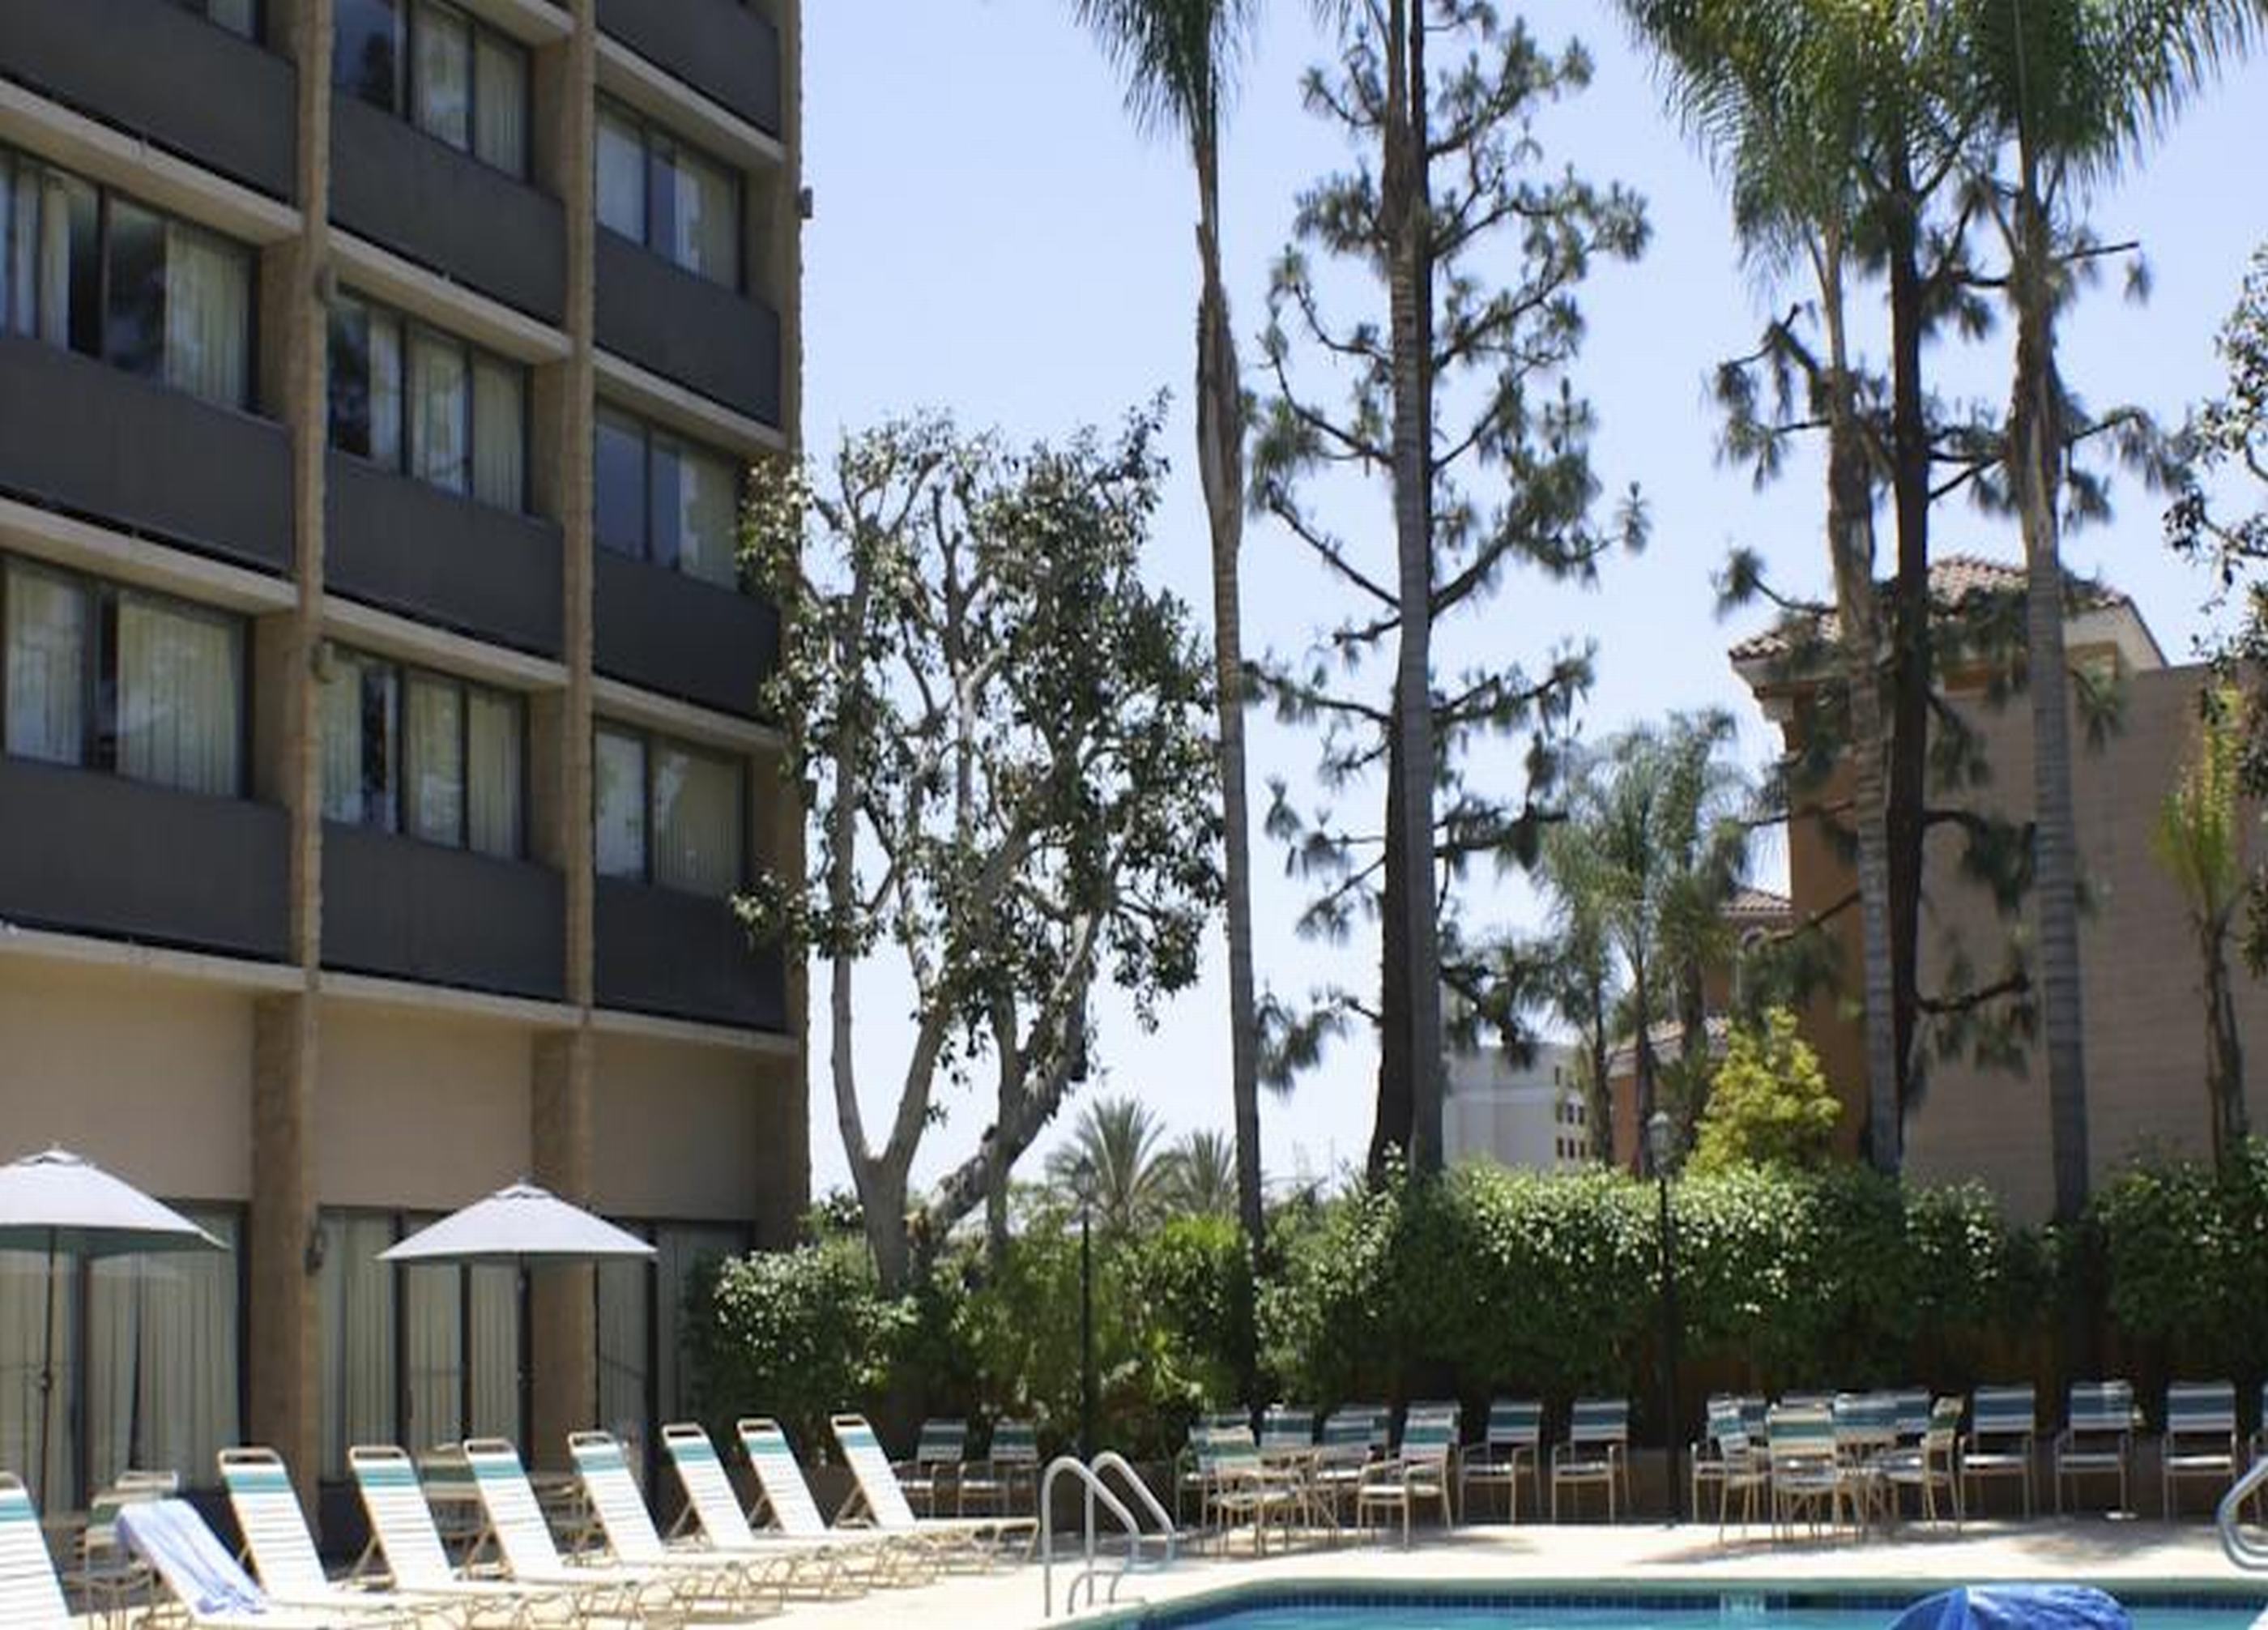 Clarion Hotel Anaheim Resort